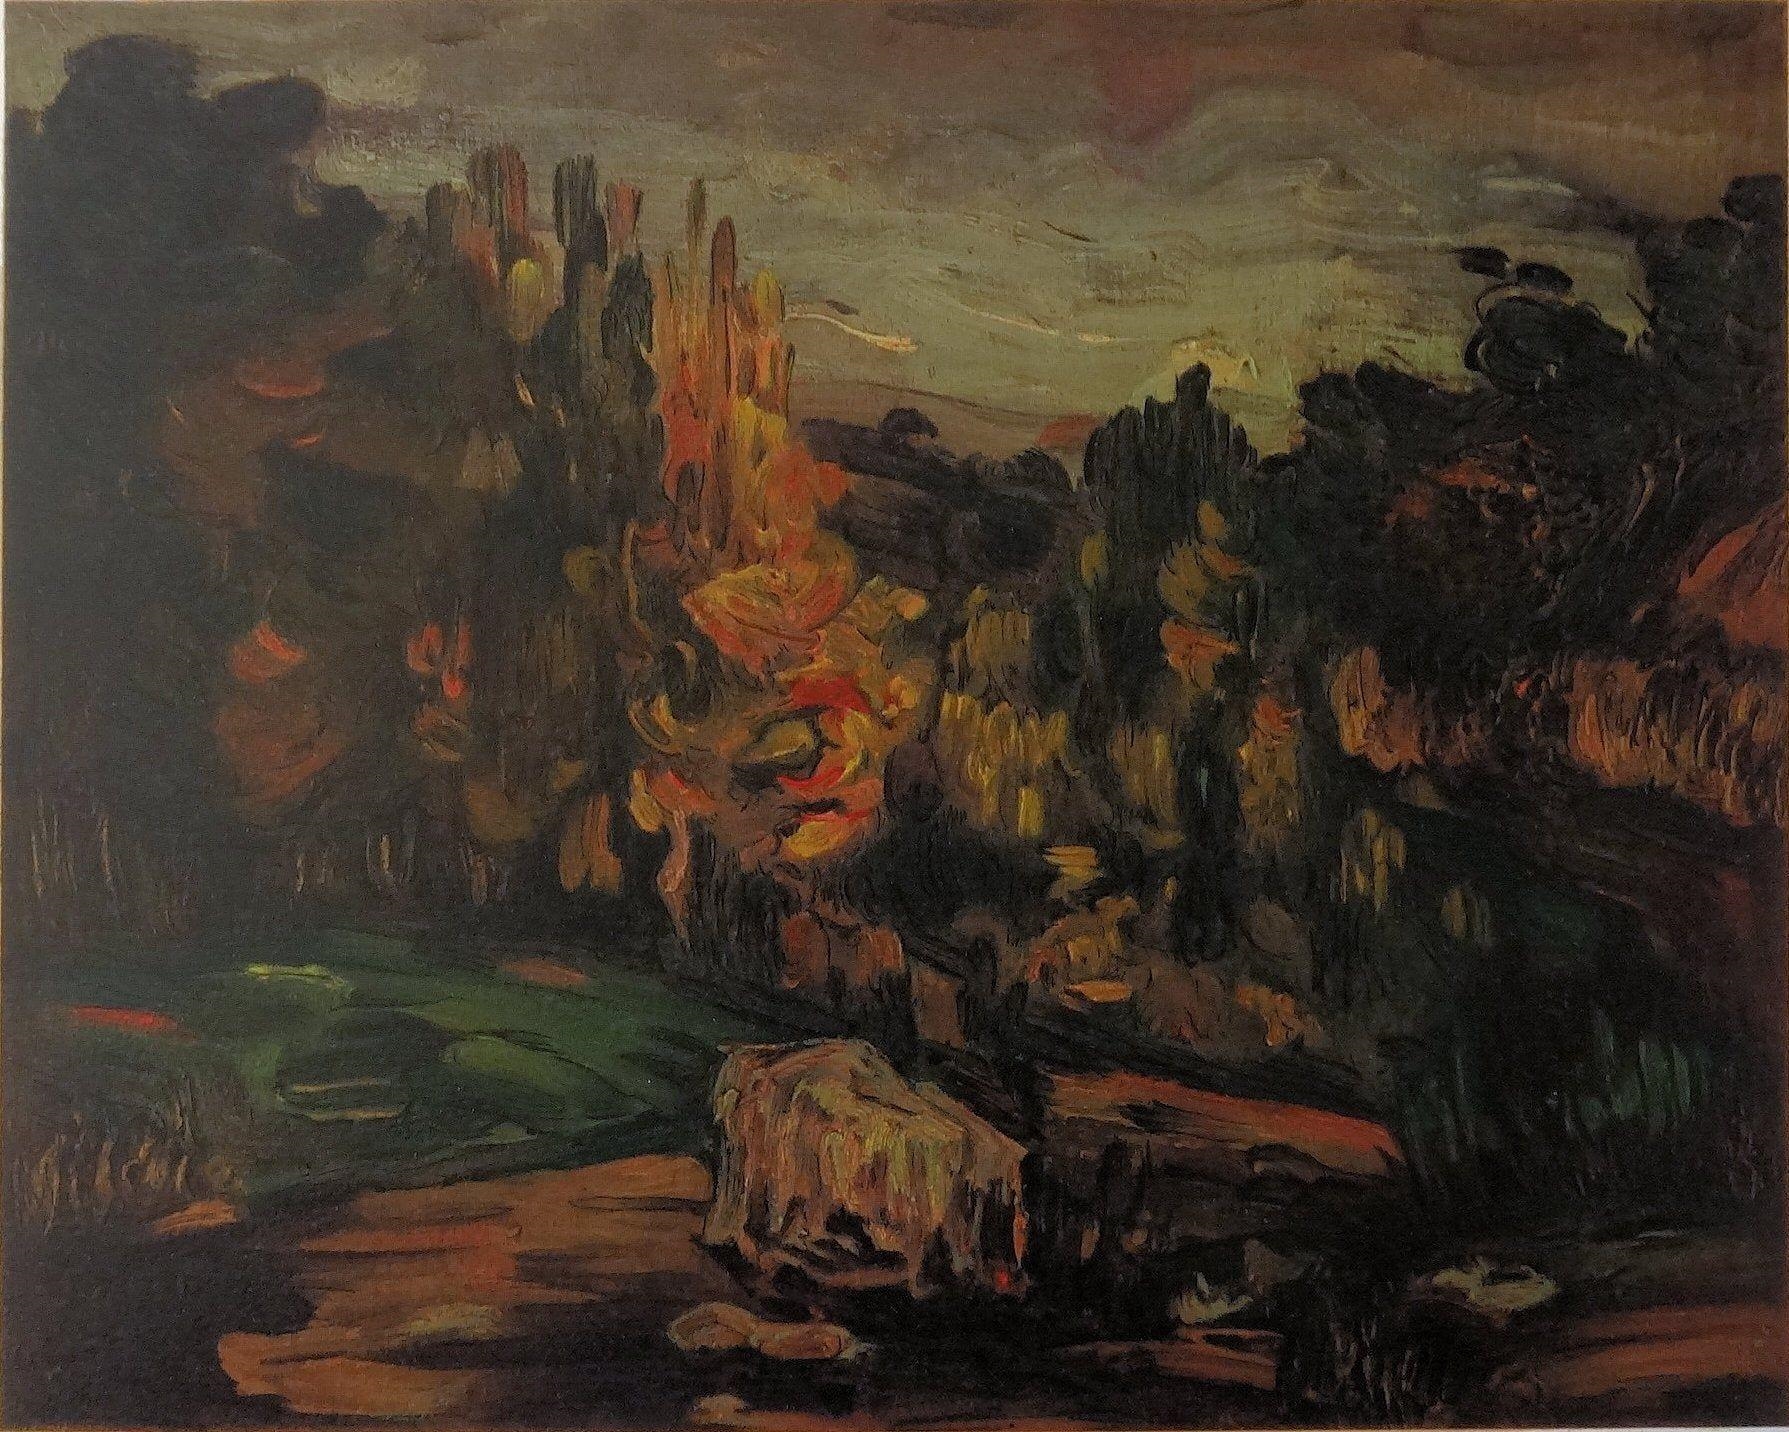 PAYSAGE PRÈS D'AIX EN PROVENCE by Paul Cézanne, 1970